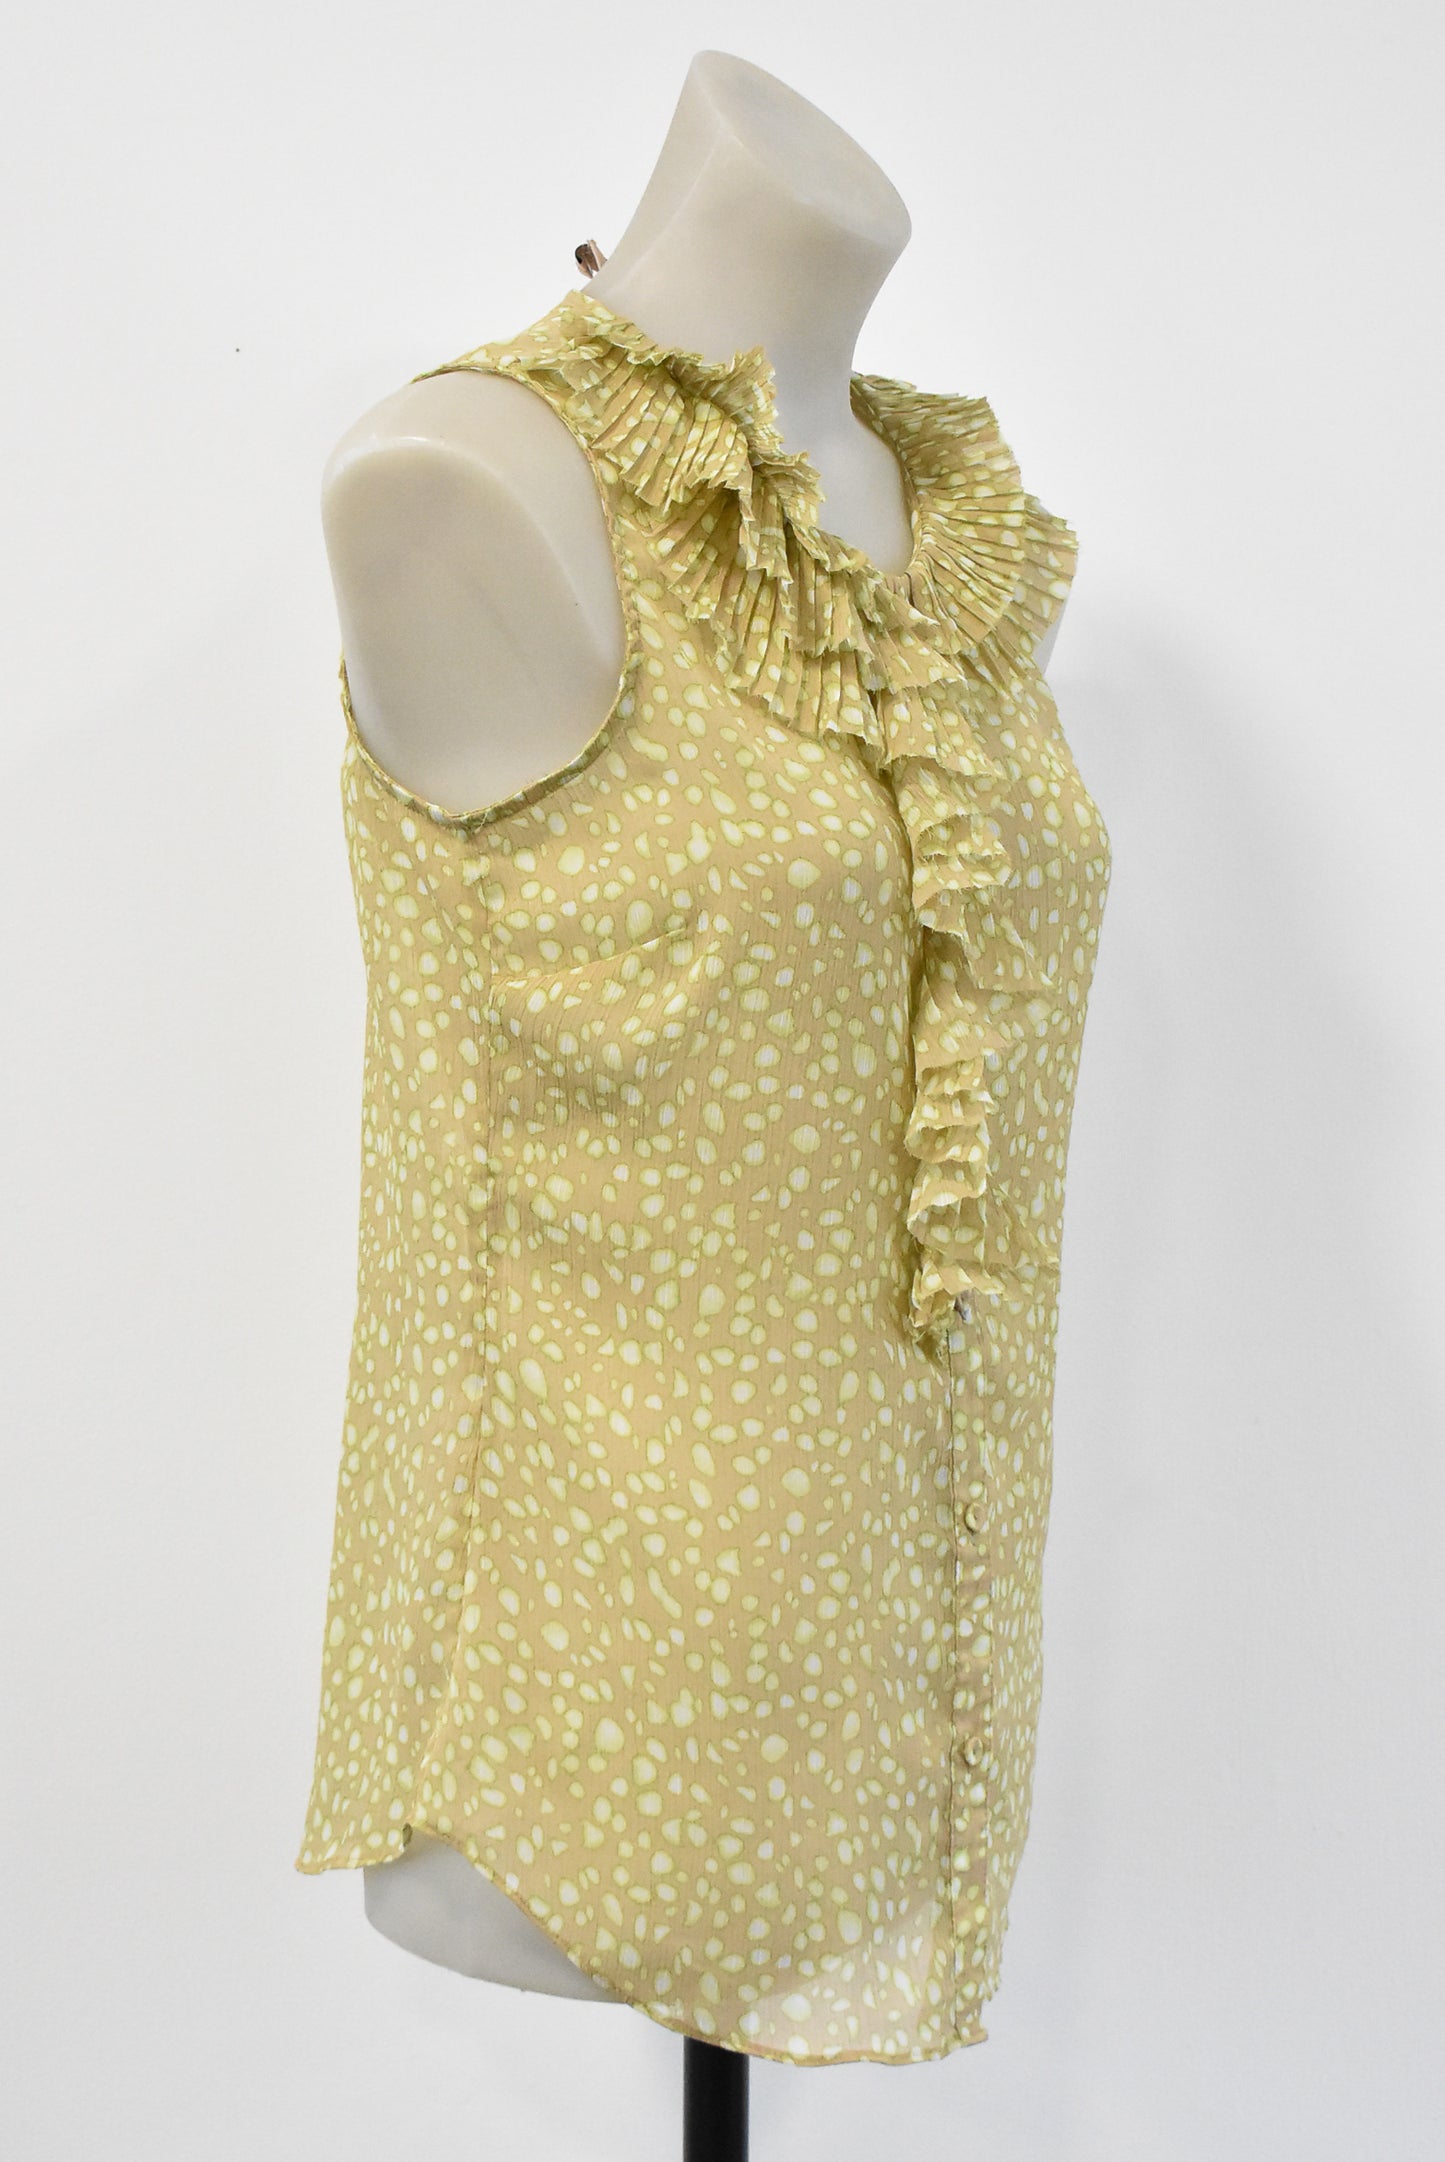 Anne Klein ruffle blouse, S